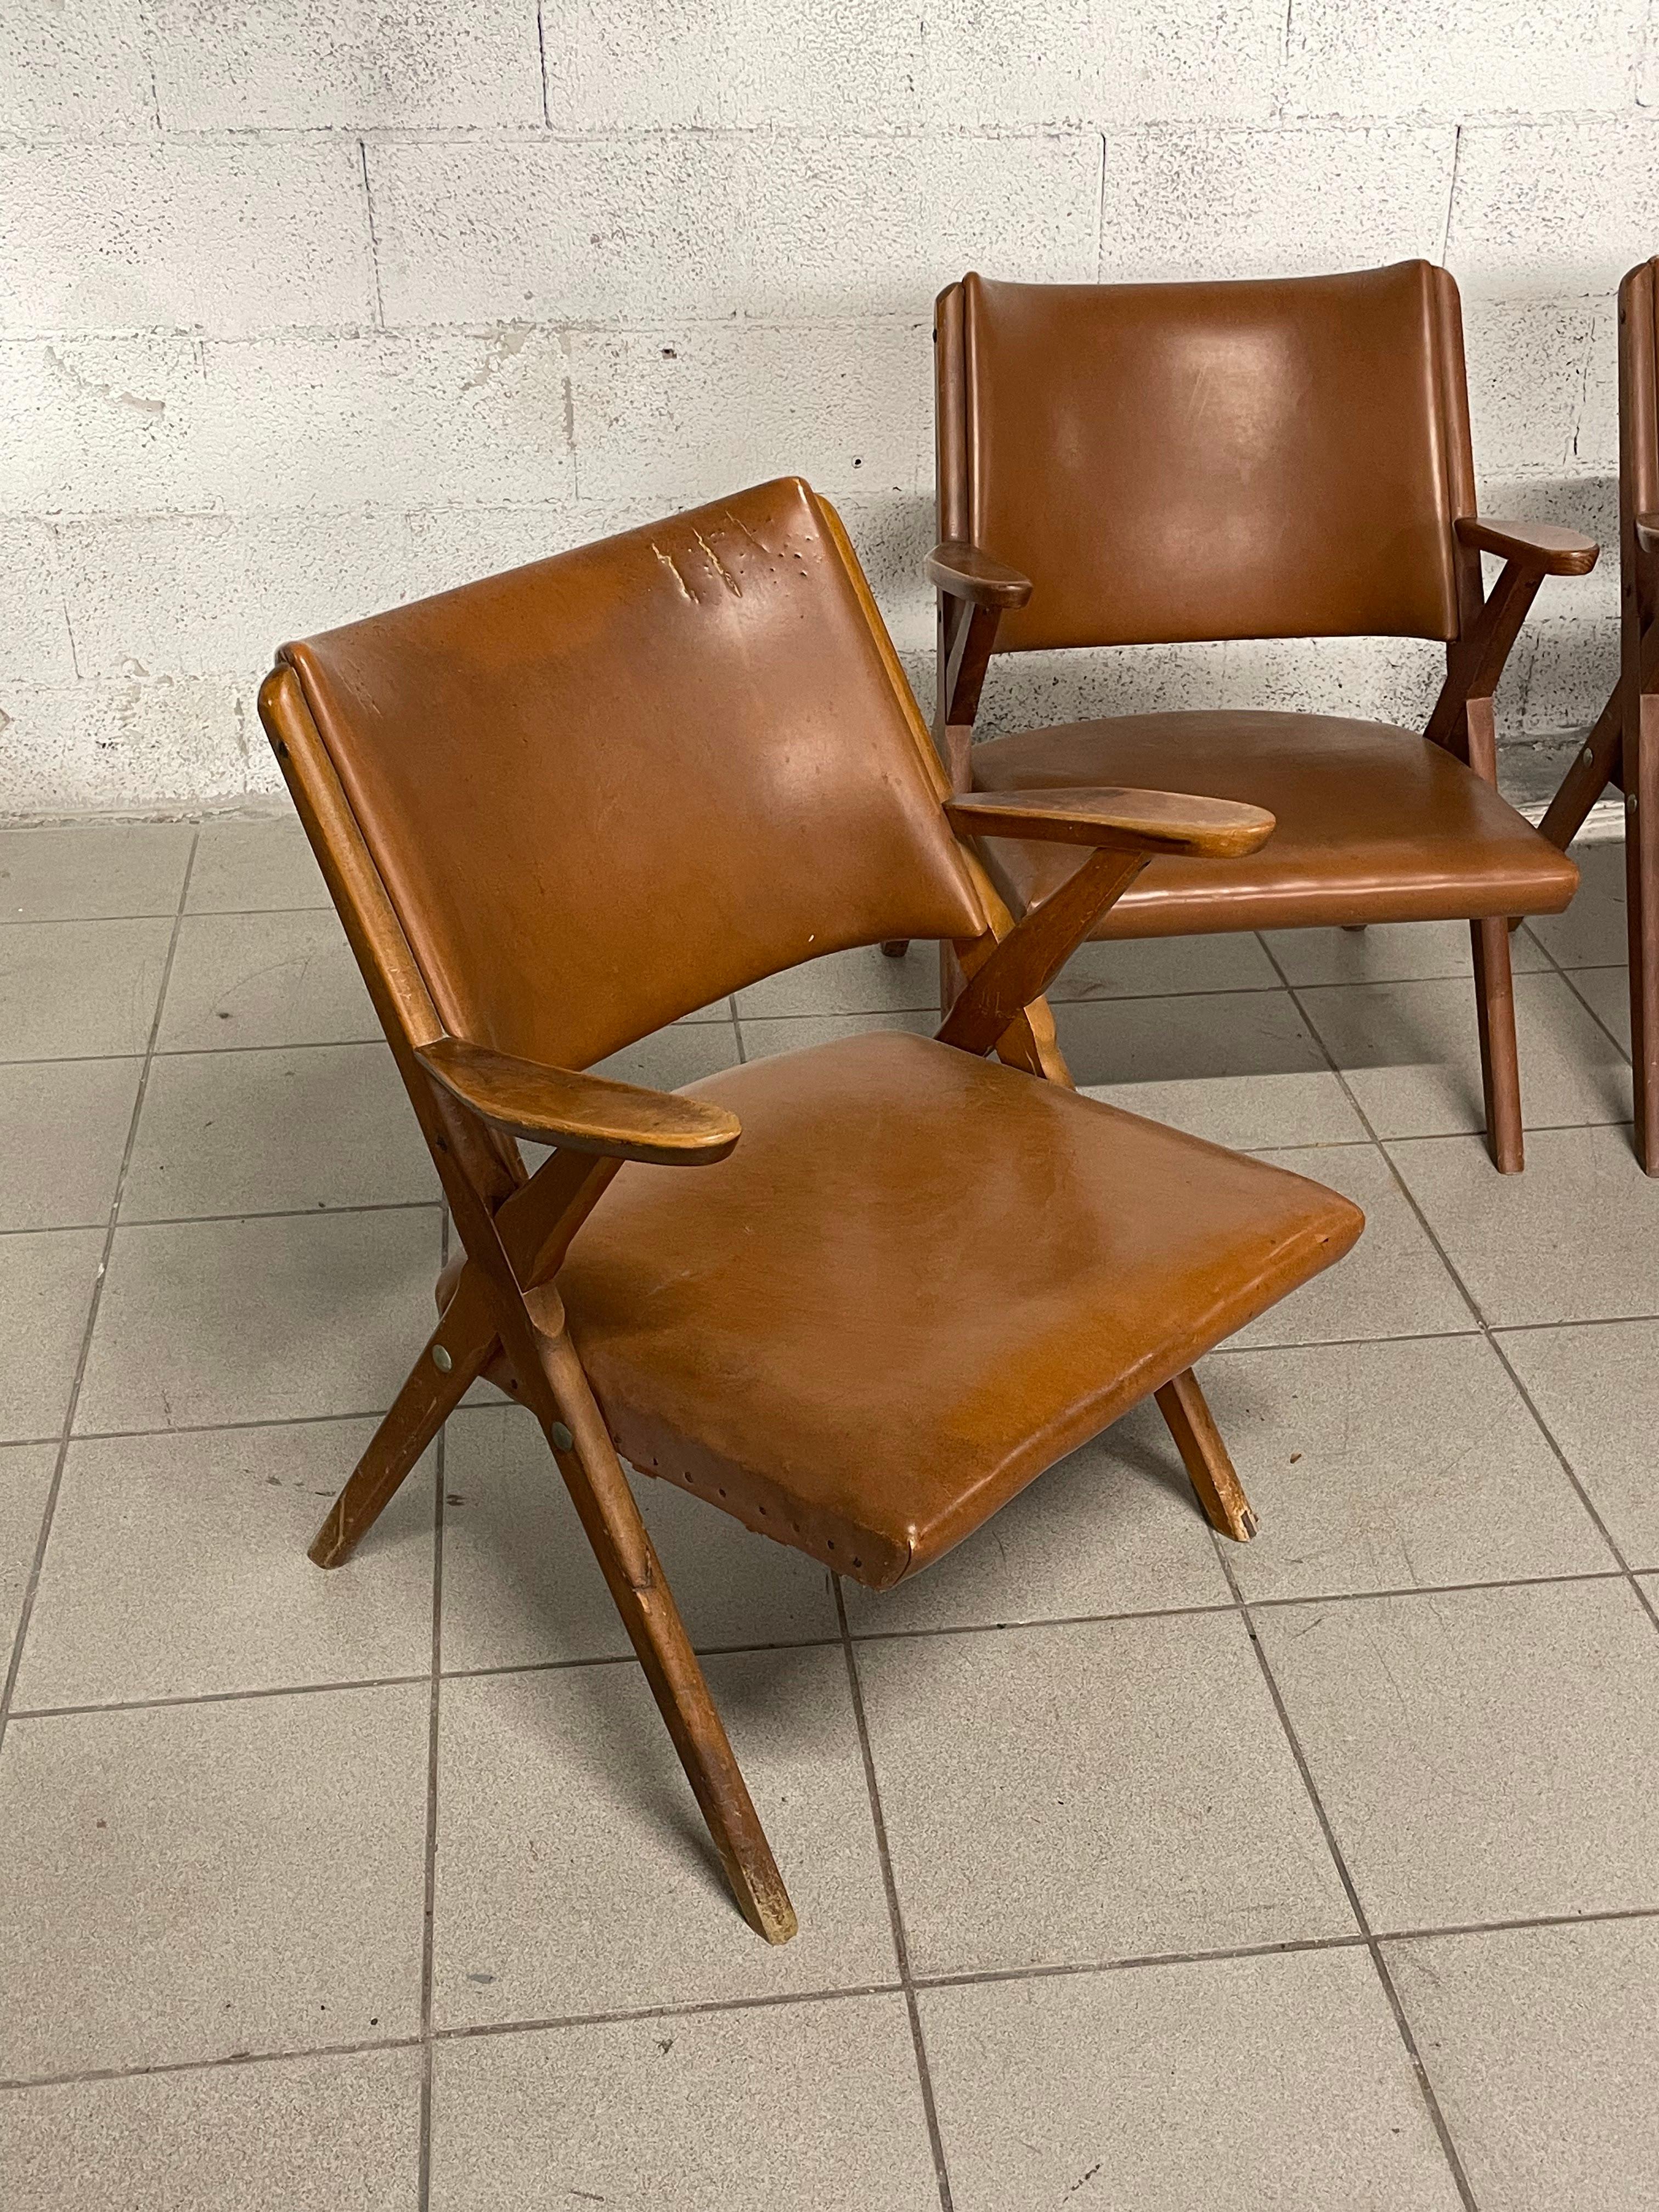 Ensemble de quatre fauteuils des années 1960 au design scandinave produits par l'usine historique de meubles DAL VERA à Conegliano Veneto (Italie) et conçus par Antonio Dal Vera lui-même.

Ils sont fabriqués en bois massif et recouverts de